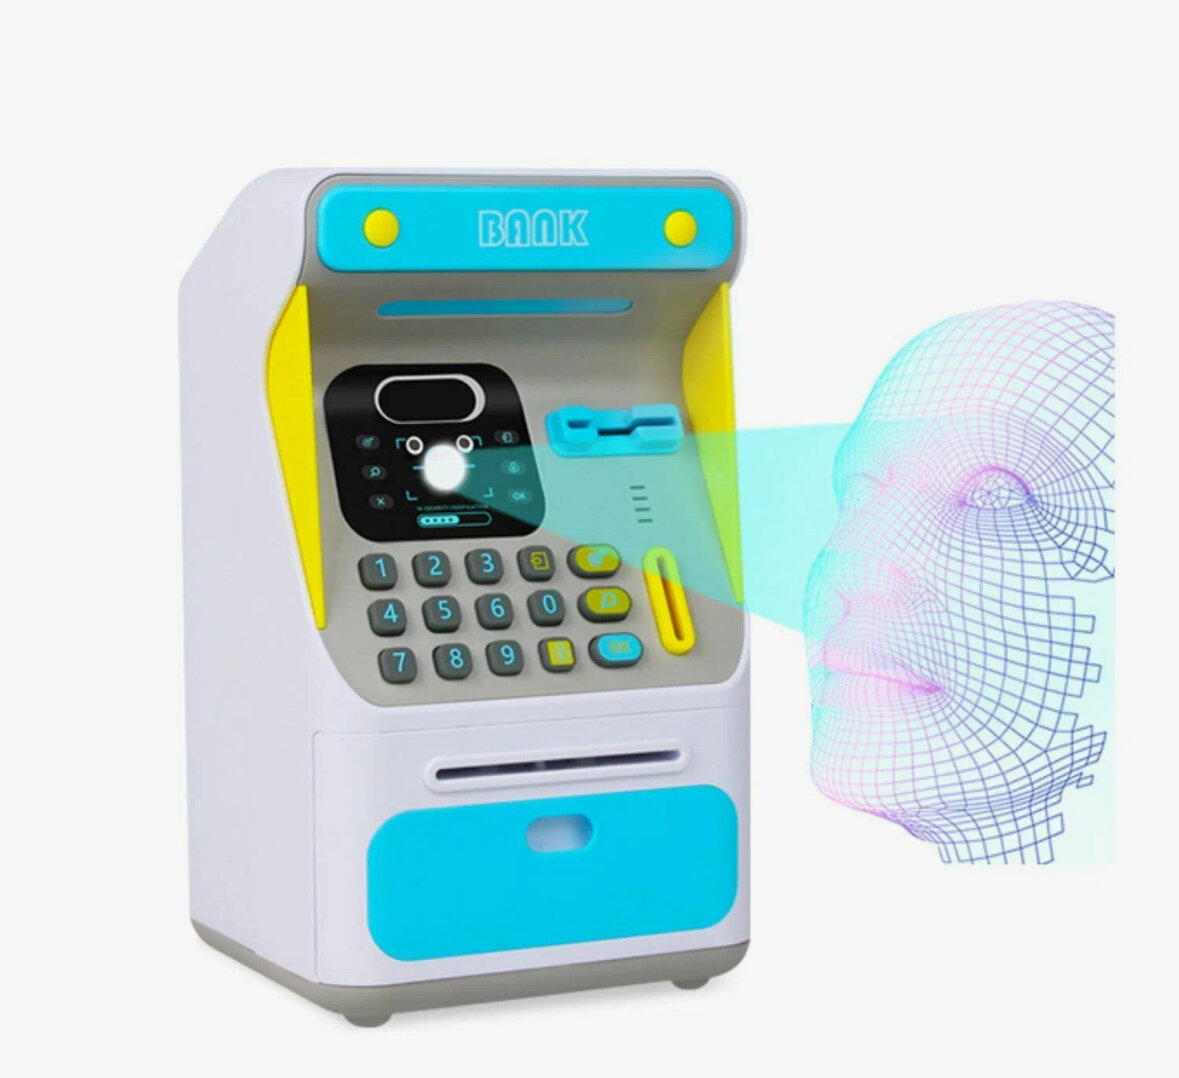 Интерактивная копилка-банкомат с распознованием лица для купюр и монет, голубая.